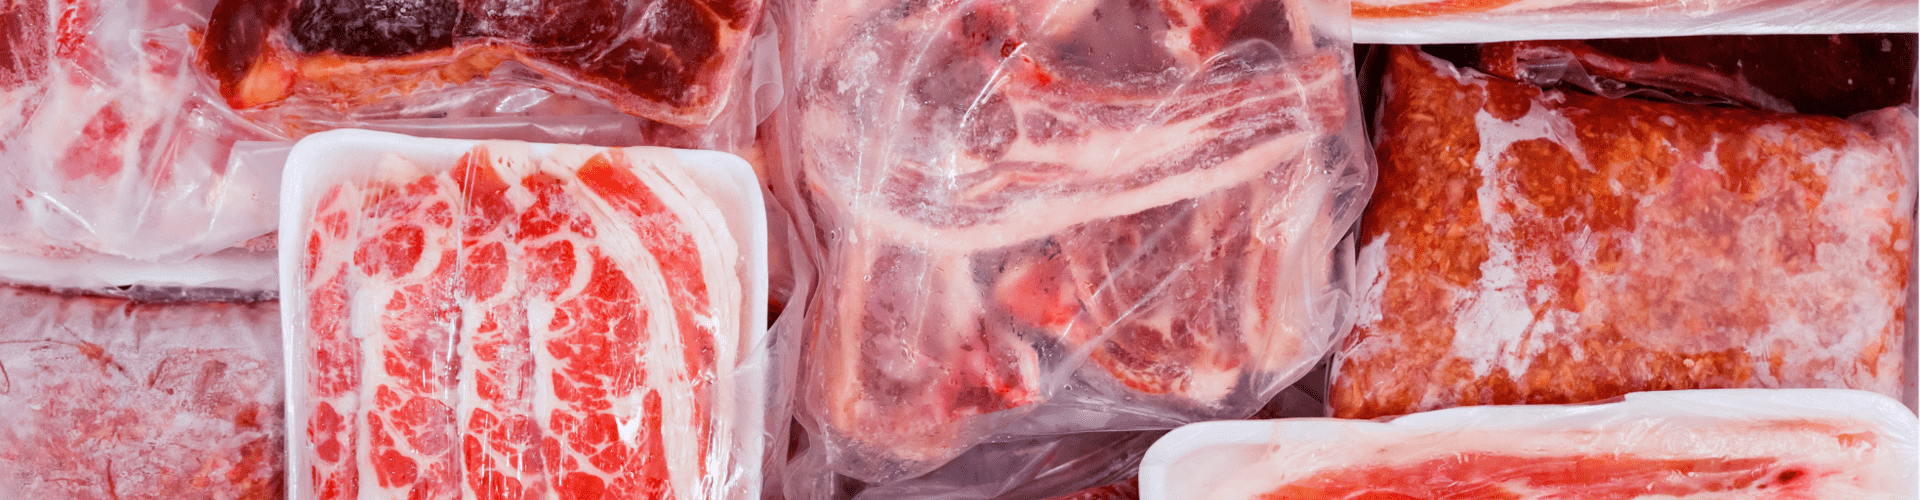 Waar moet je rekening mee houden tijdens het invriezen van vlees?